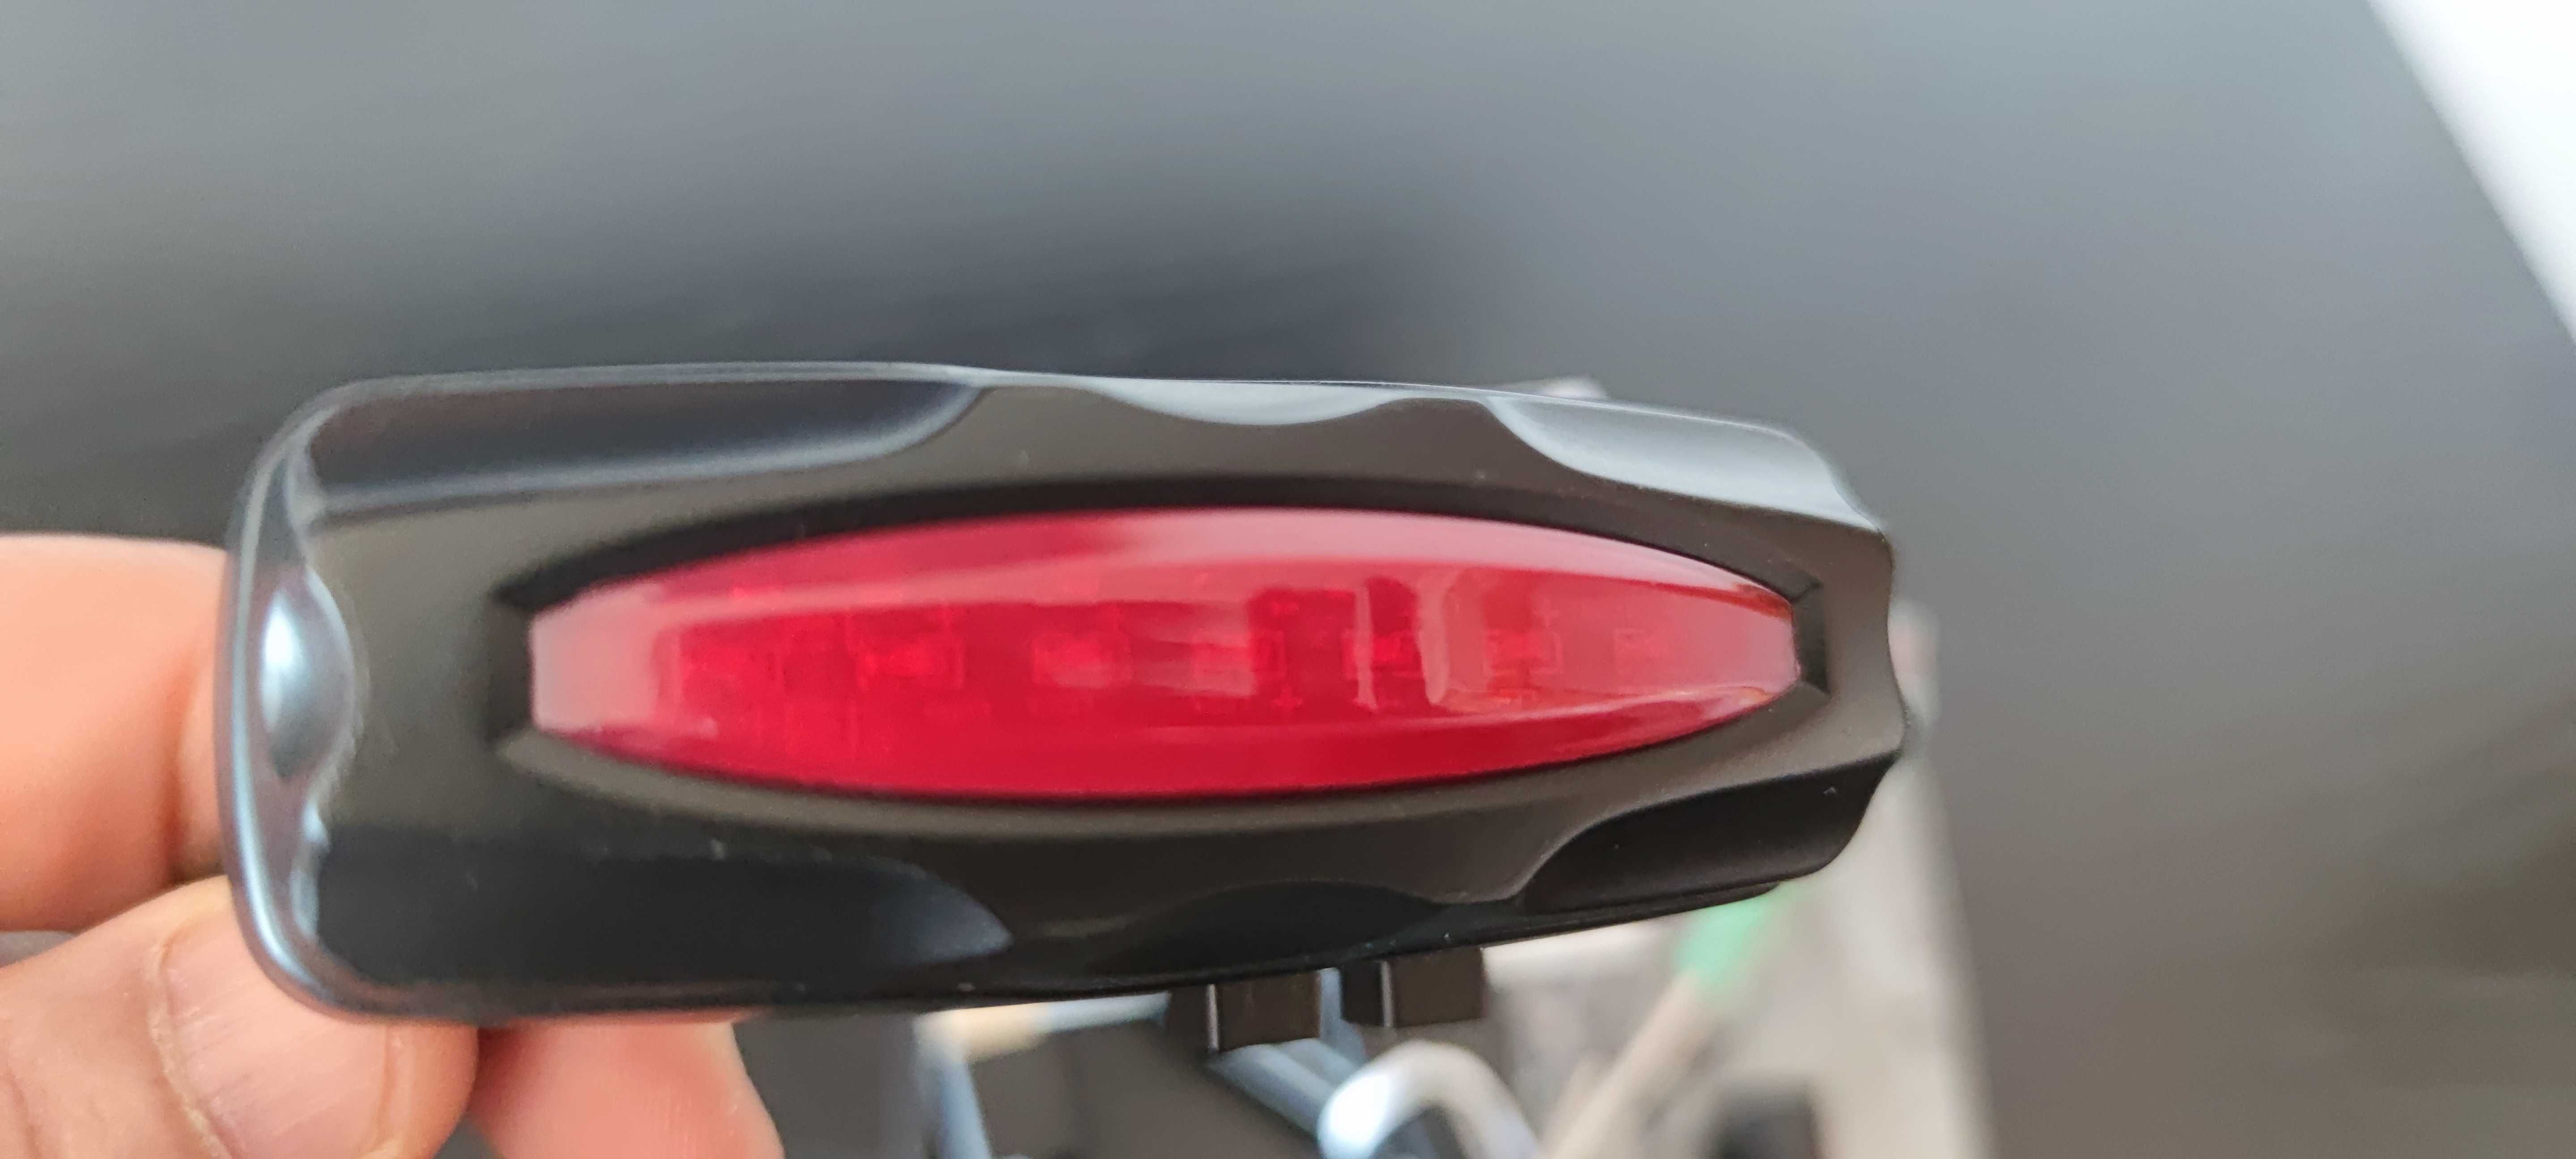 Localizador GPS oculto escondido luz refletora de bicicleta moto